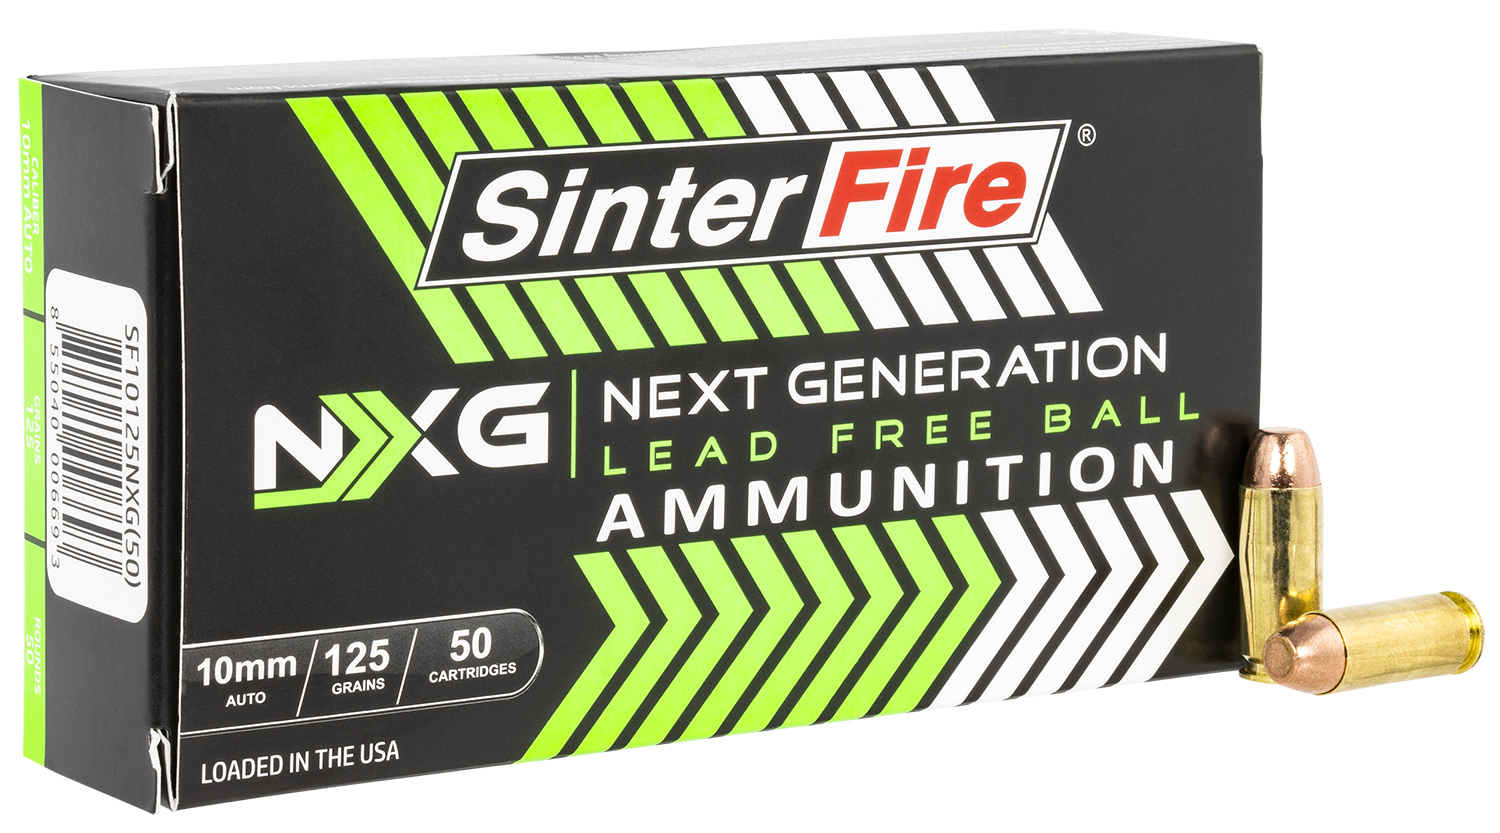 SinterFire Inc Sf10125NXG Next Generation (NXG) 10mm Auto 125 Gr Lead Free Ball 50 Bx/20 Cs